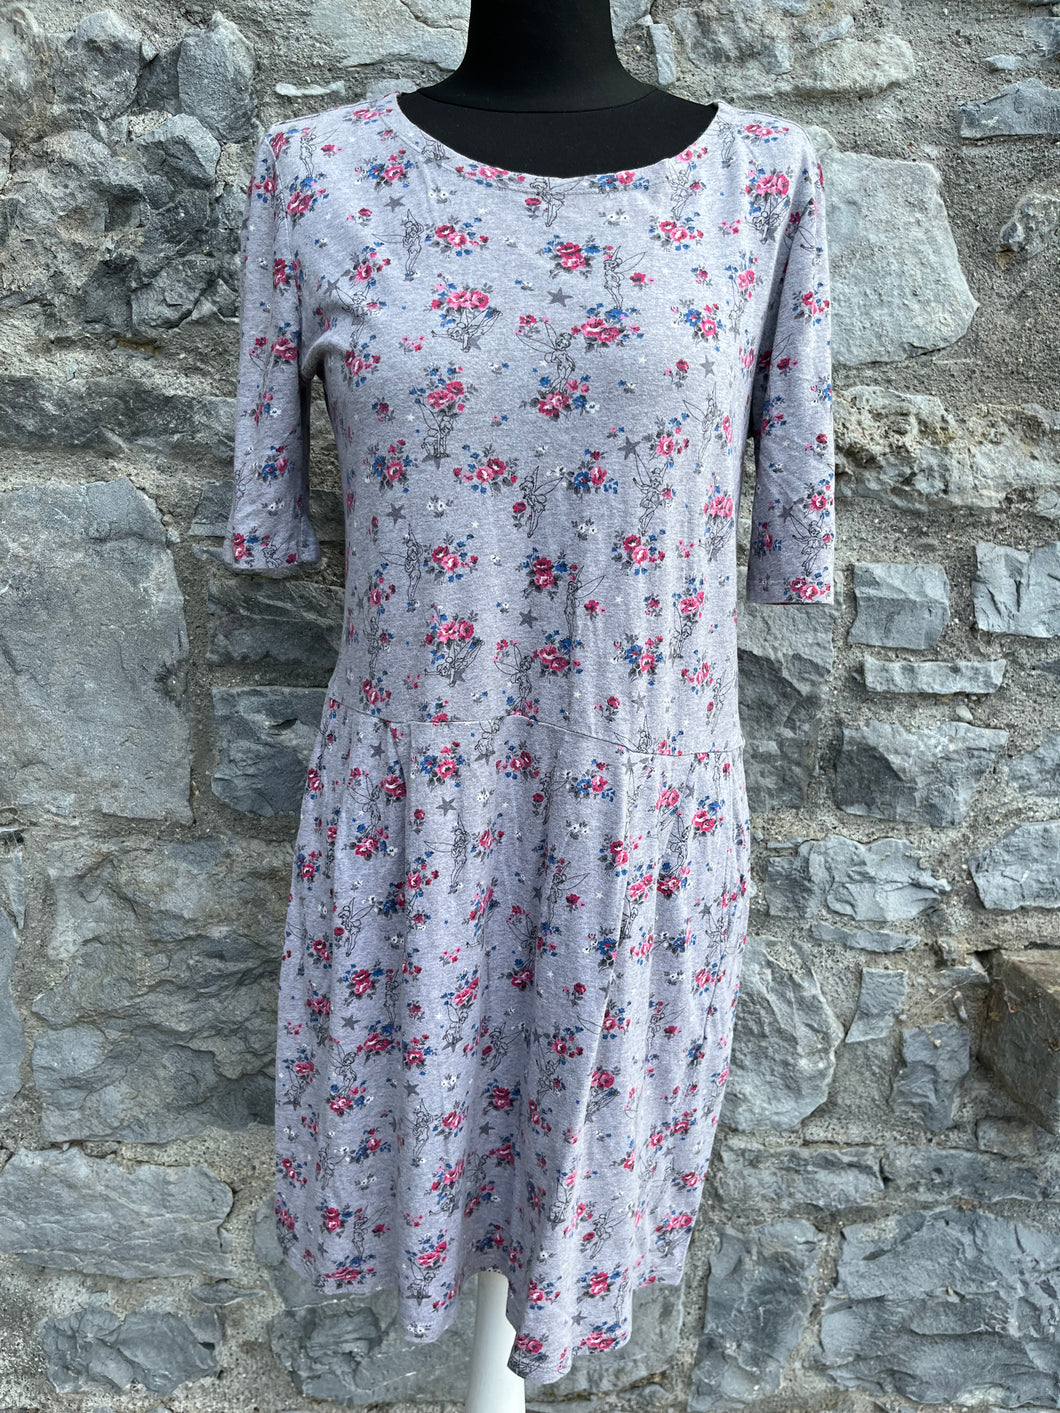 Tinker bell floral grey dress uk 10